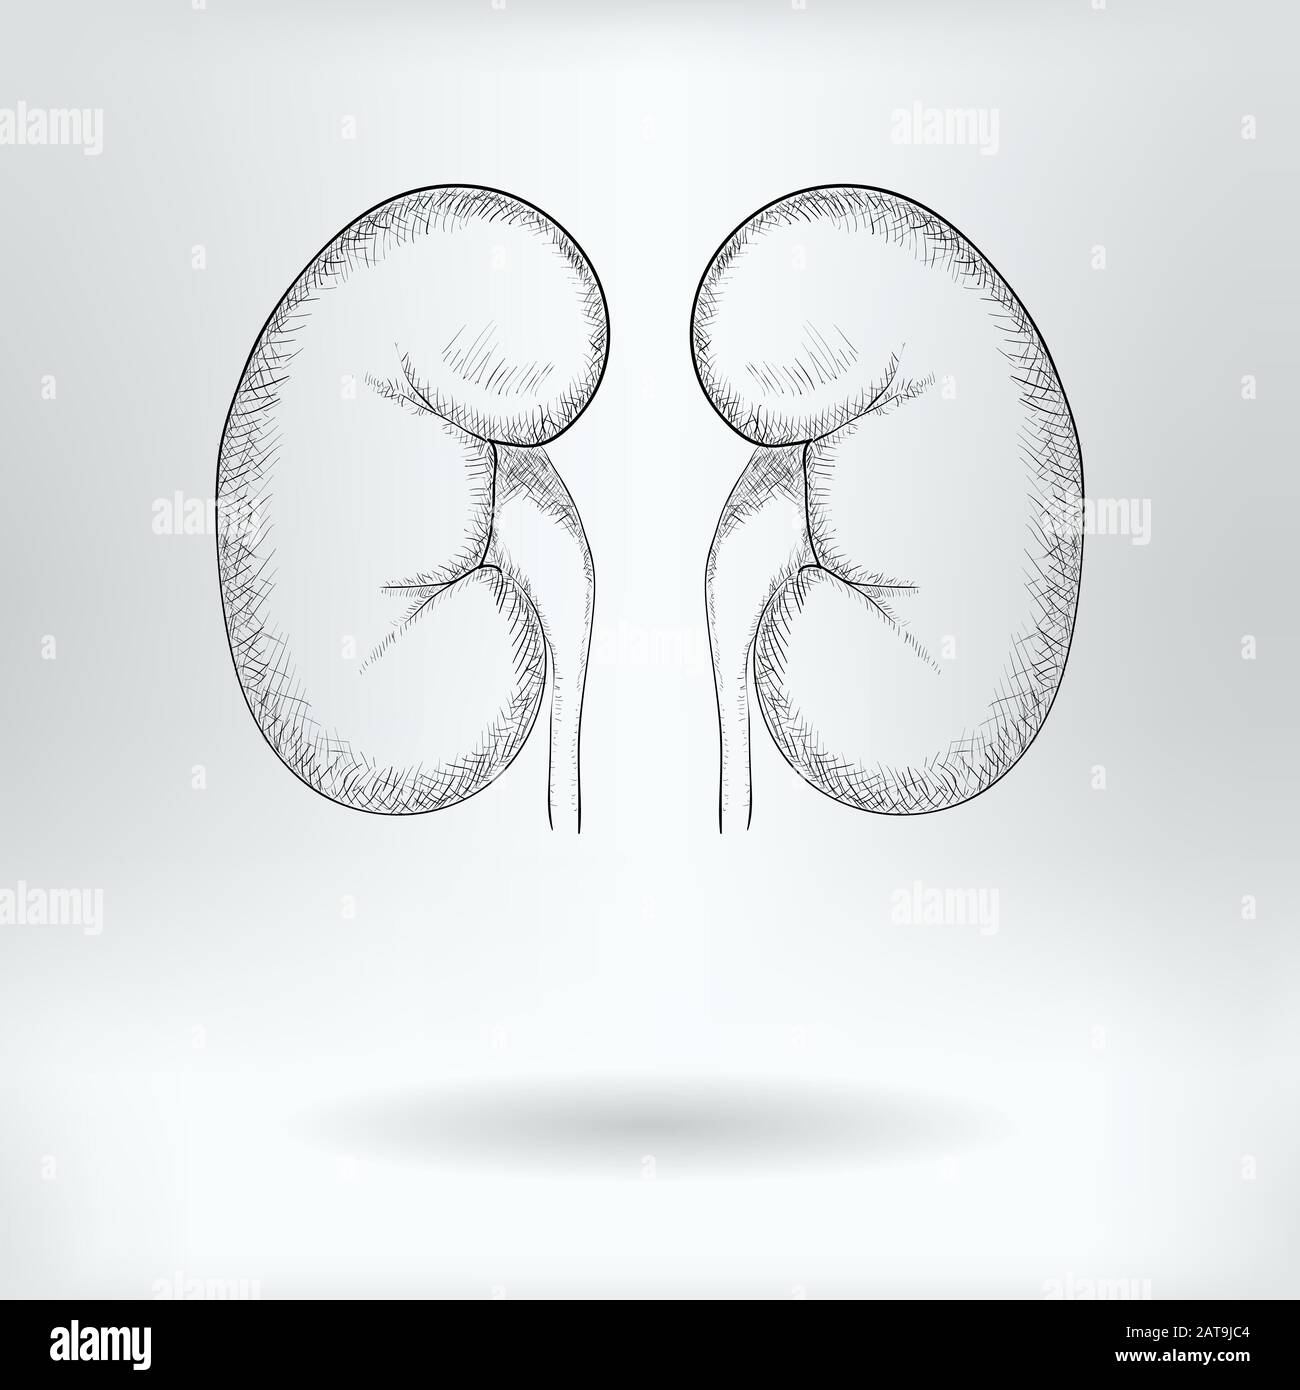 1989 Kidney Sketch Images Stock Photos  Vectors  Shutterstock